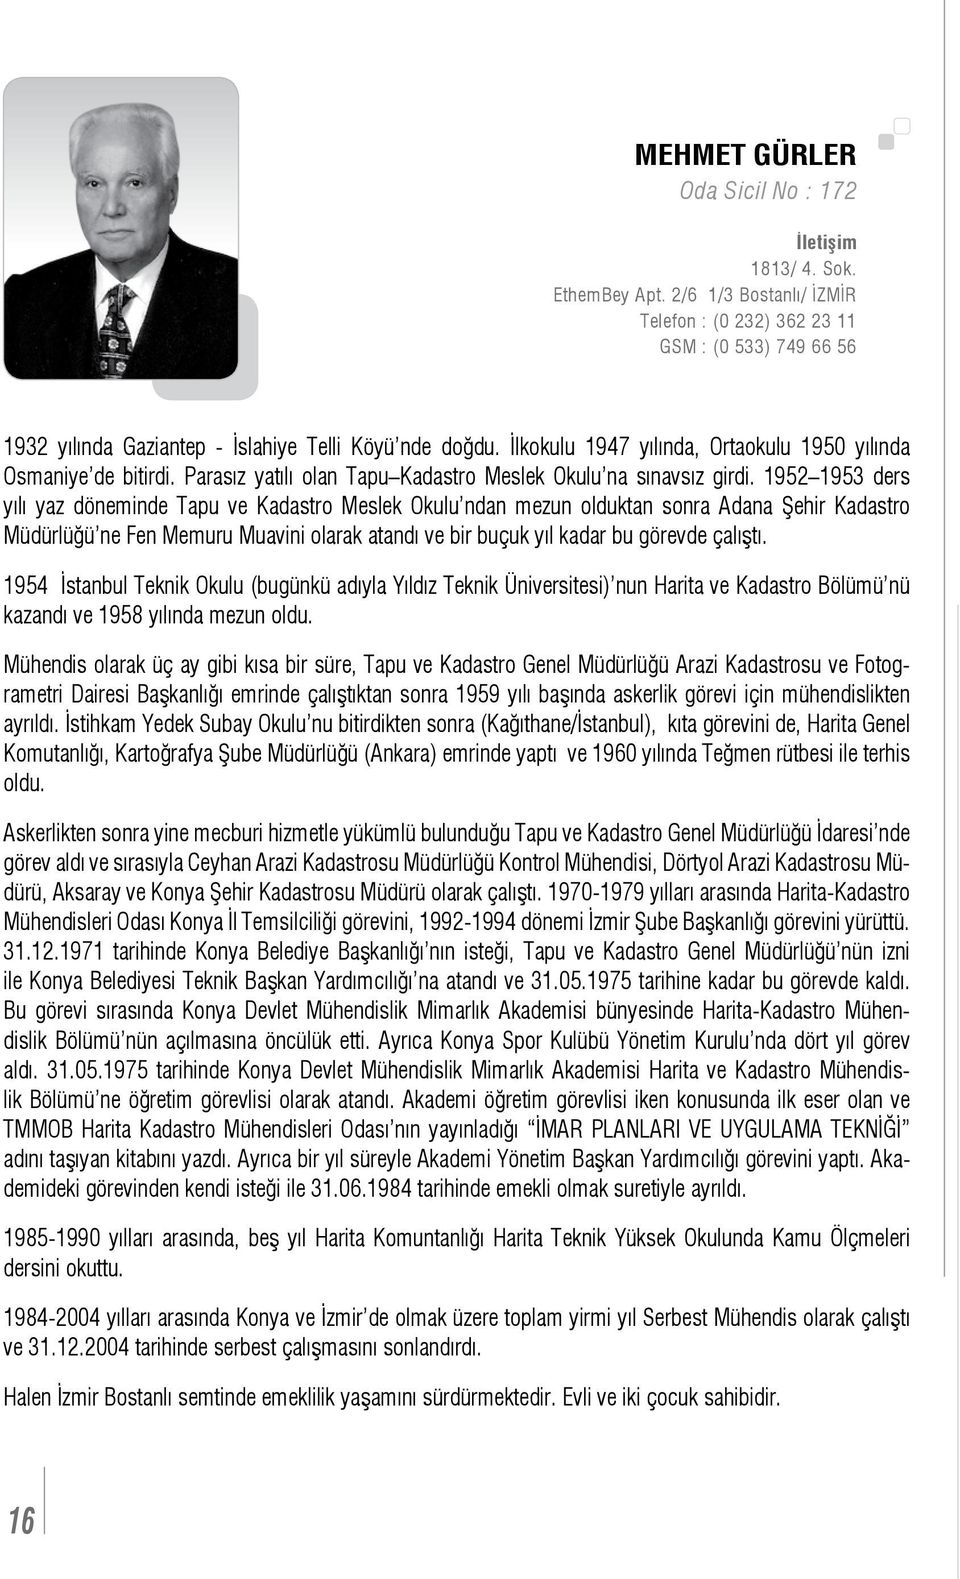 1952 1953 ders yılı yaz döneminde Tapu ve Kadastro Meslek Okulu ndan mezun olduktan sonra Adana Şehir Kadastro Müdürlüğü ne Fen Memuru Muavini olarak atandı ve bir buçuk yıl kadar bu görevde çalıştı.